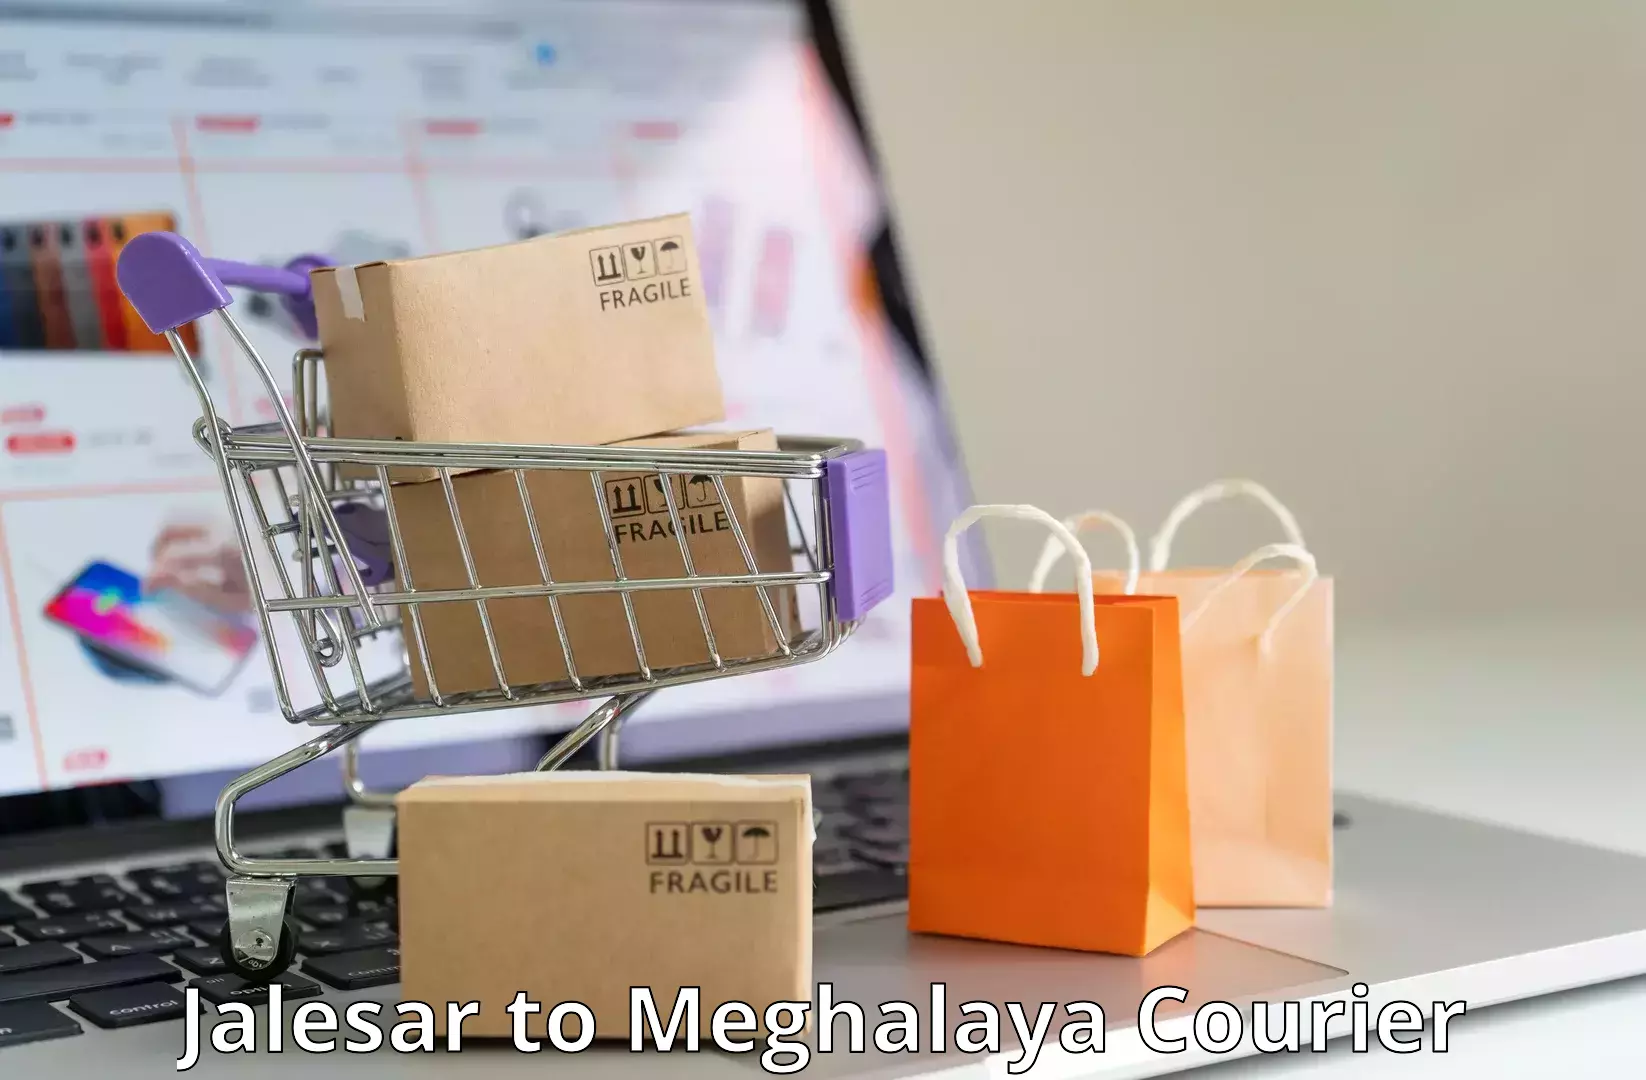 Courier service innovation Jalesar to Meghalaya